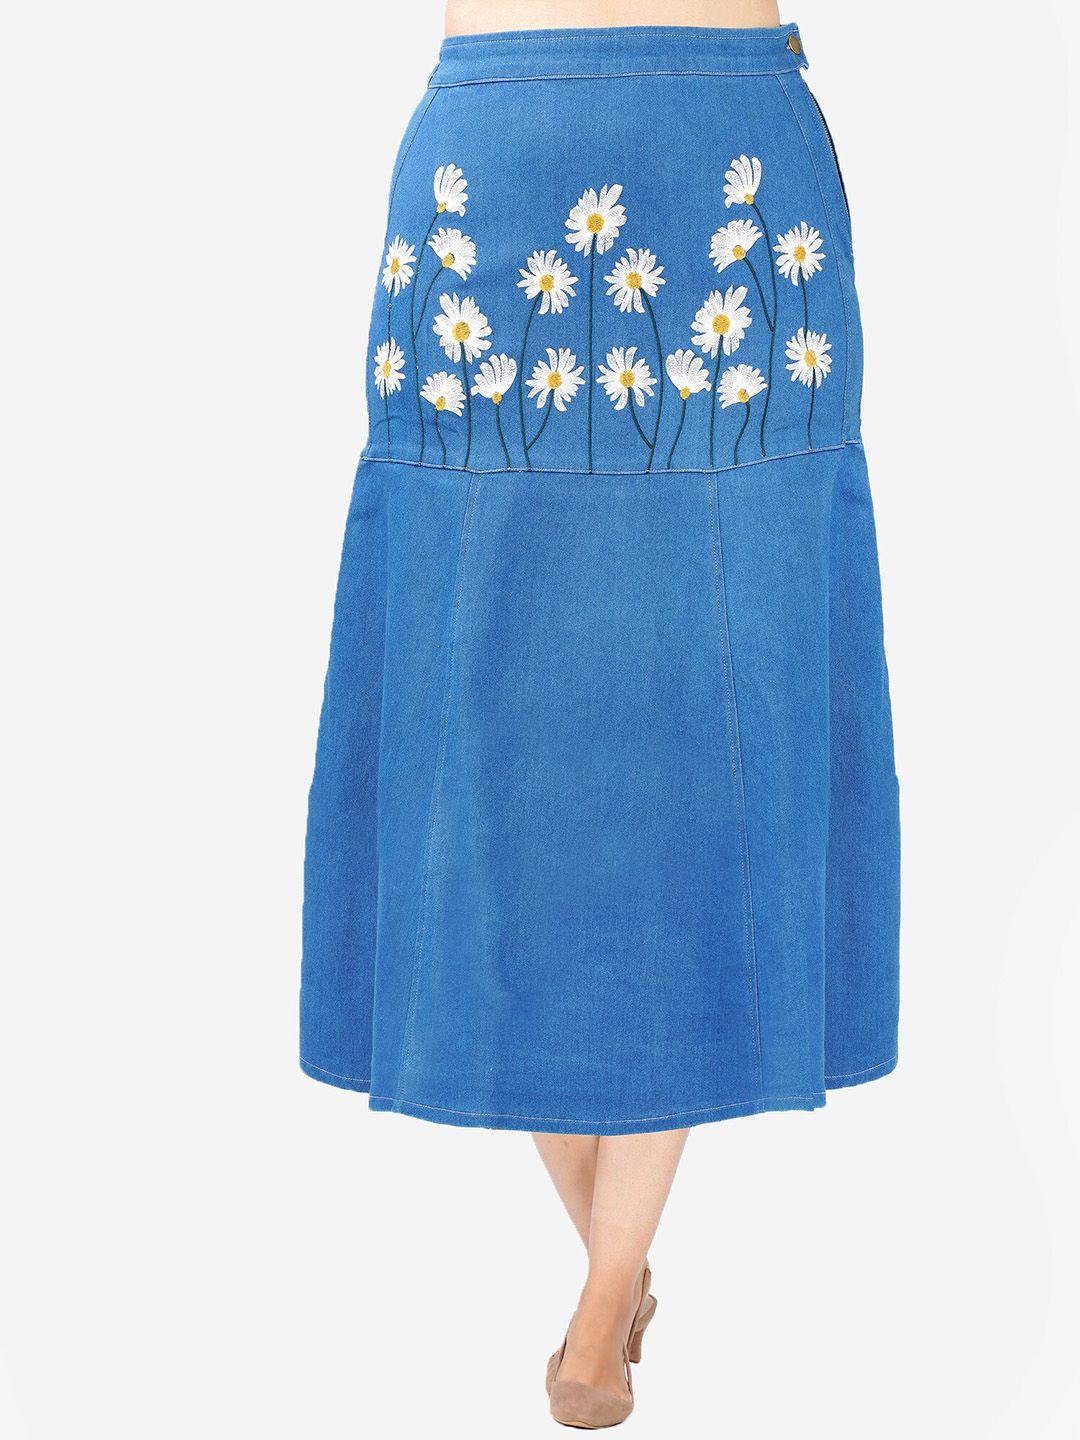 sumavi-fashion embroidery a-line maxi skirt